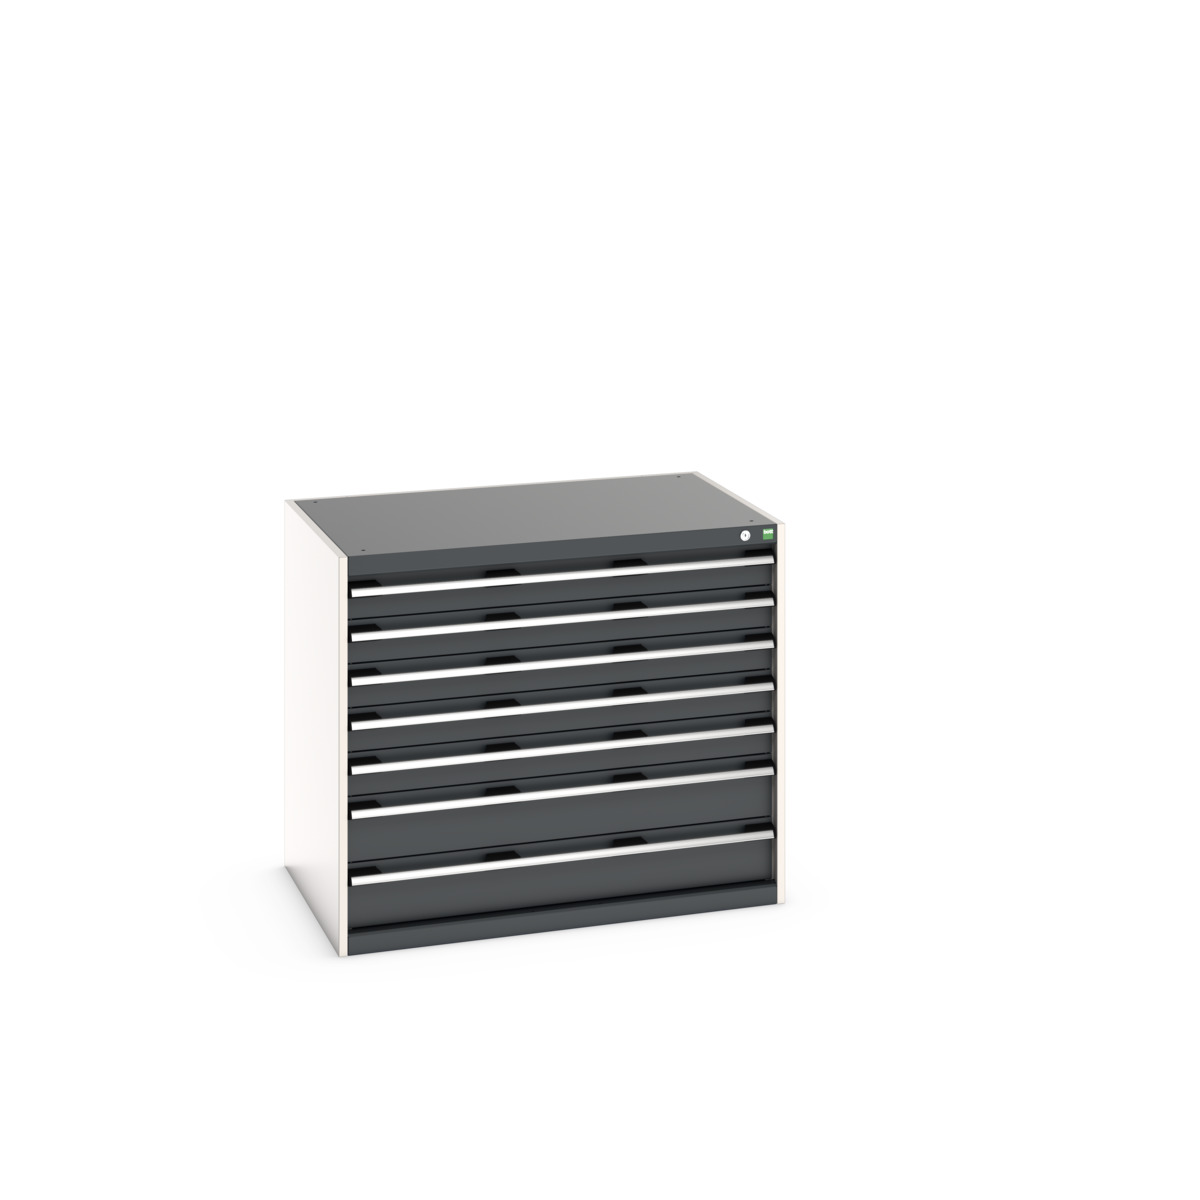 40029092.19V - cubio drawer cabinet